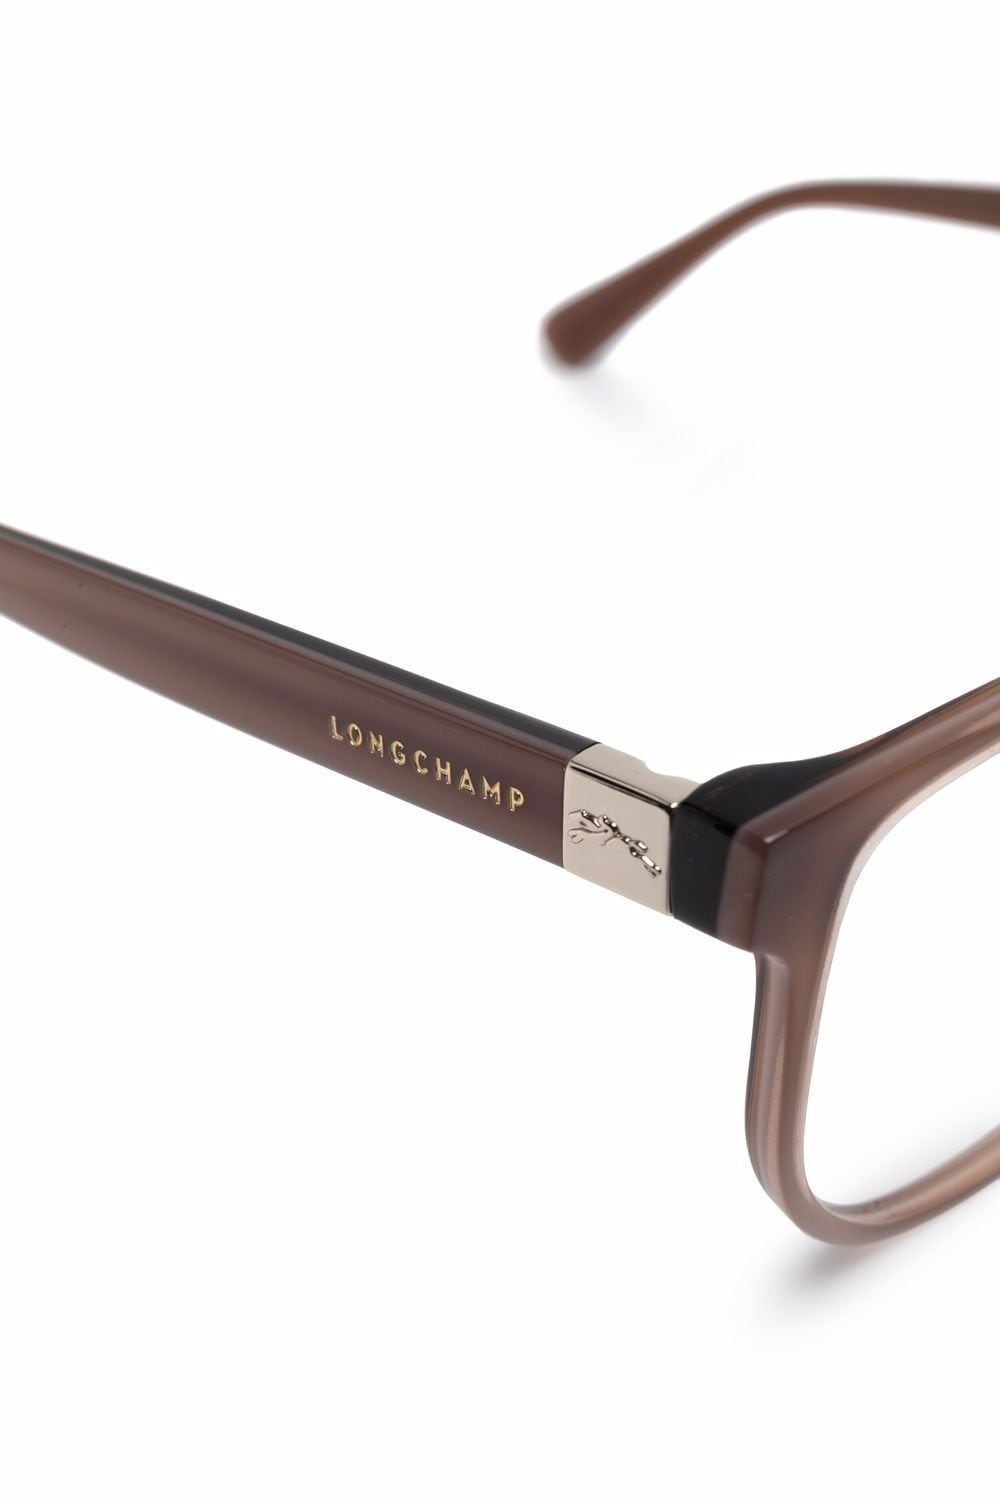 фото Longchamp очки в круглой оправе с прозрачными линзами